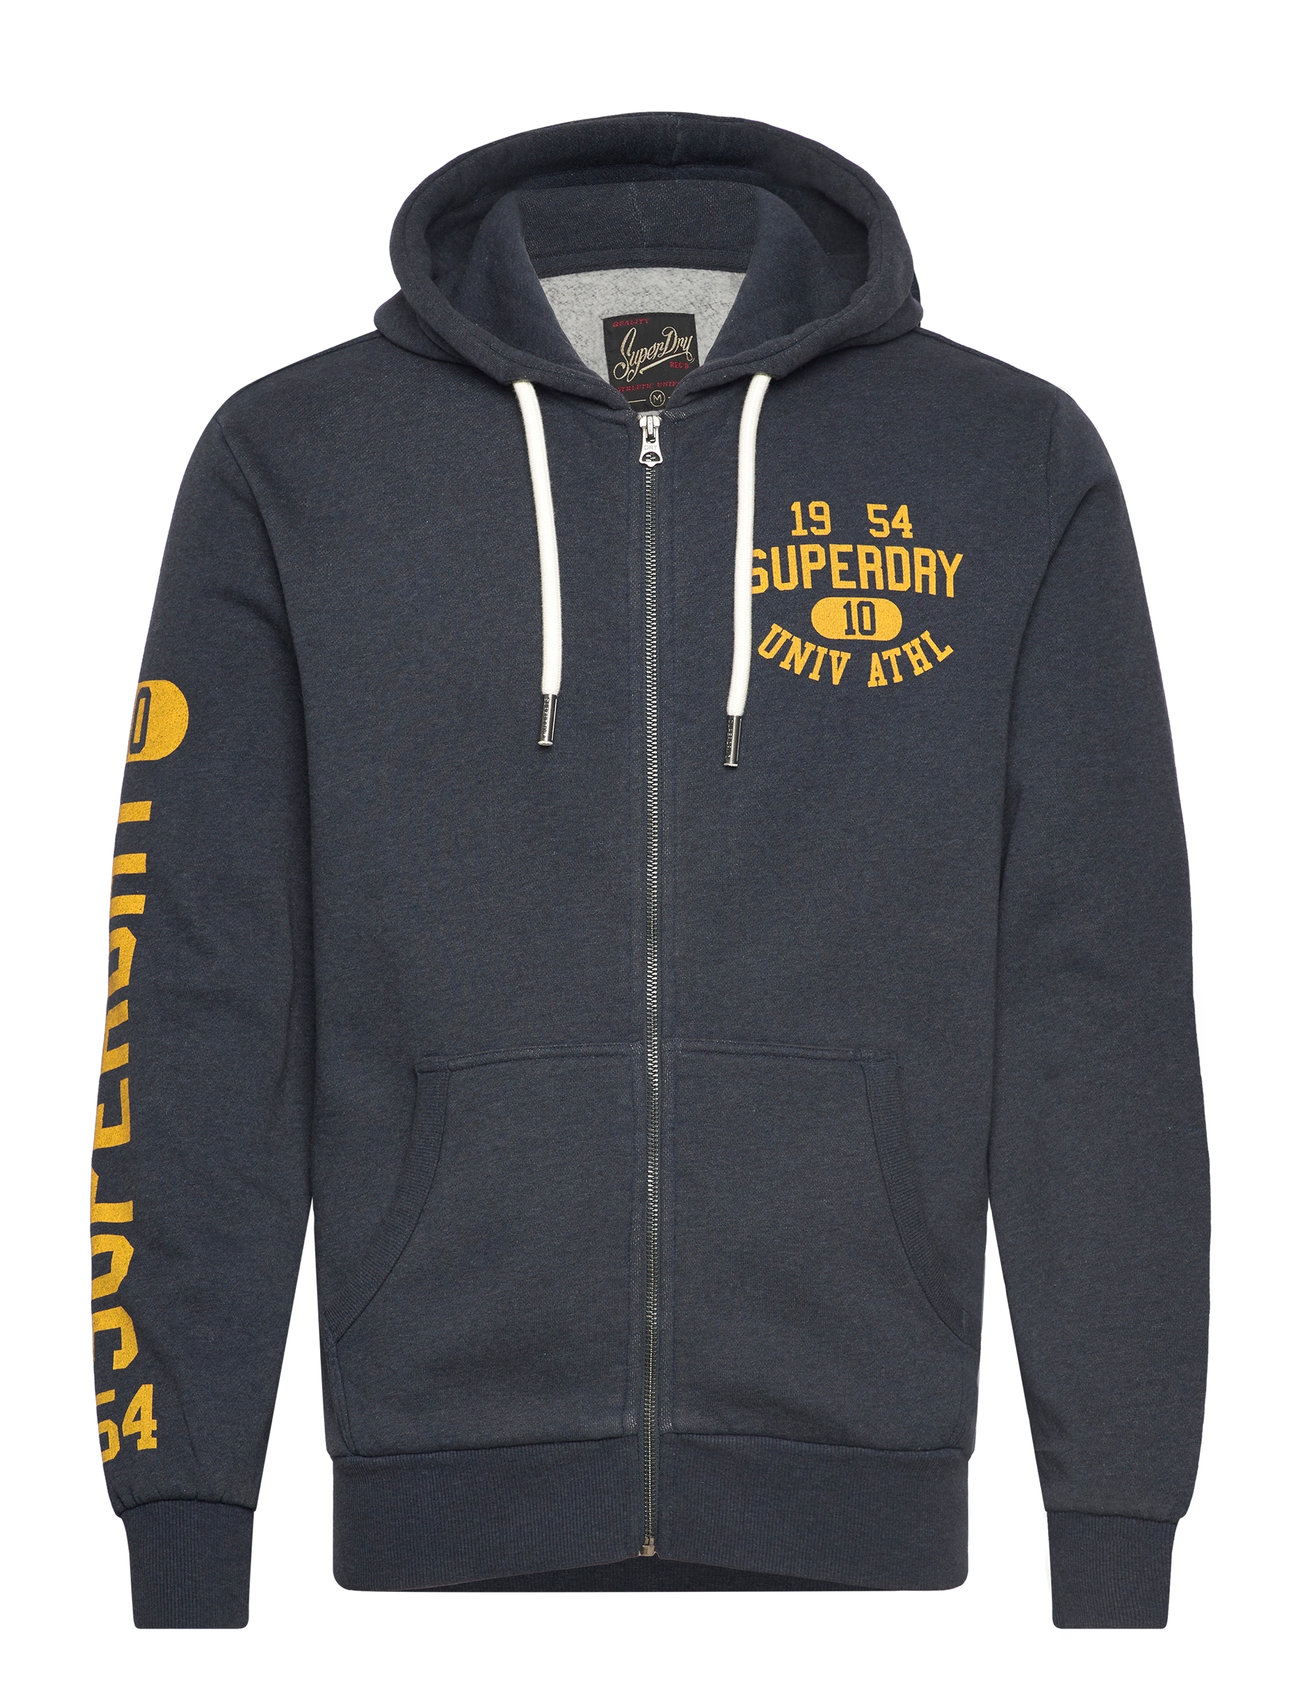 Athletic Coll Graphic Ziphood Tops Sweatshirts & Hoodies Hoodies Navy Superdry